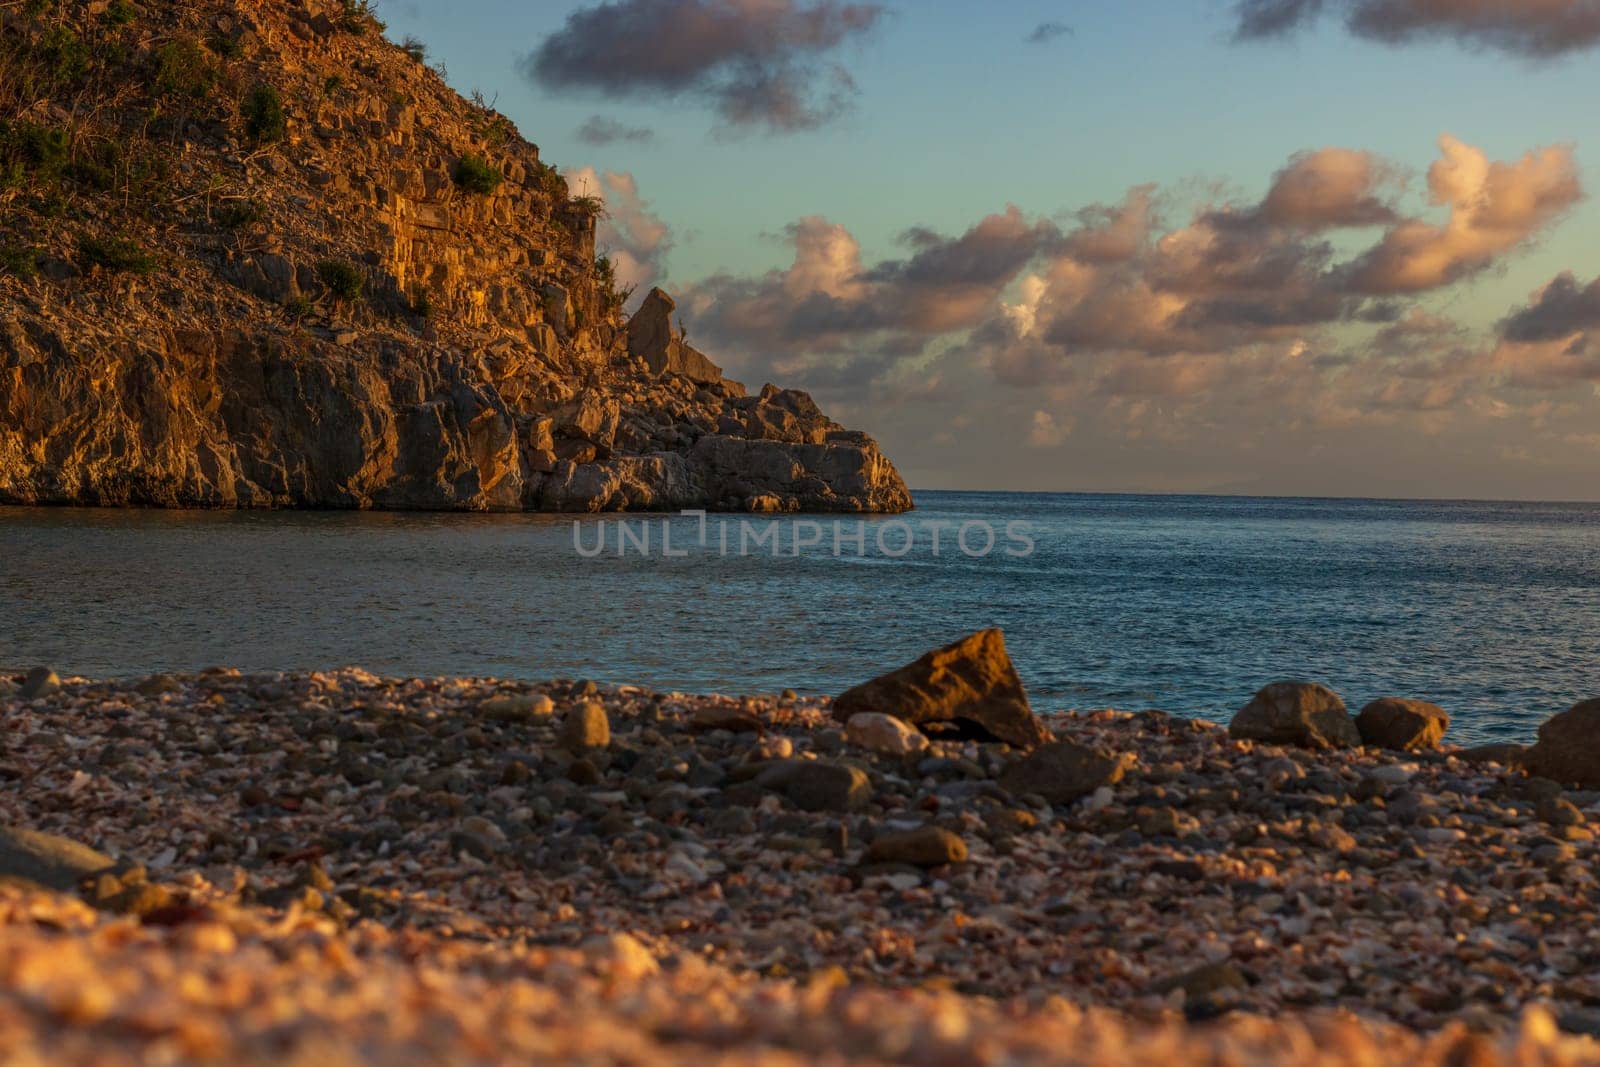 Peaceful beach in Saint Barthélemy (St. Barts, St. Barth) Caribbean by vladispas